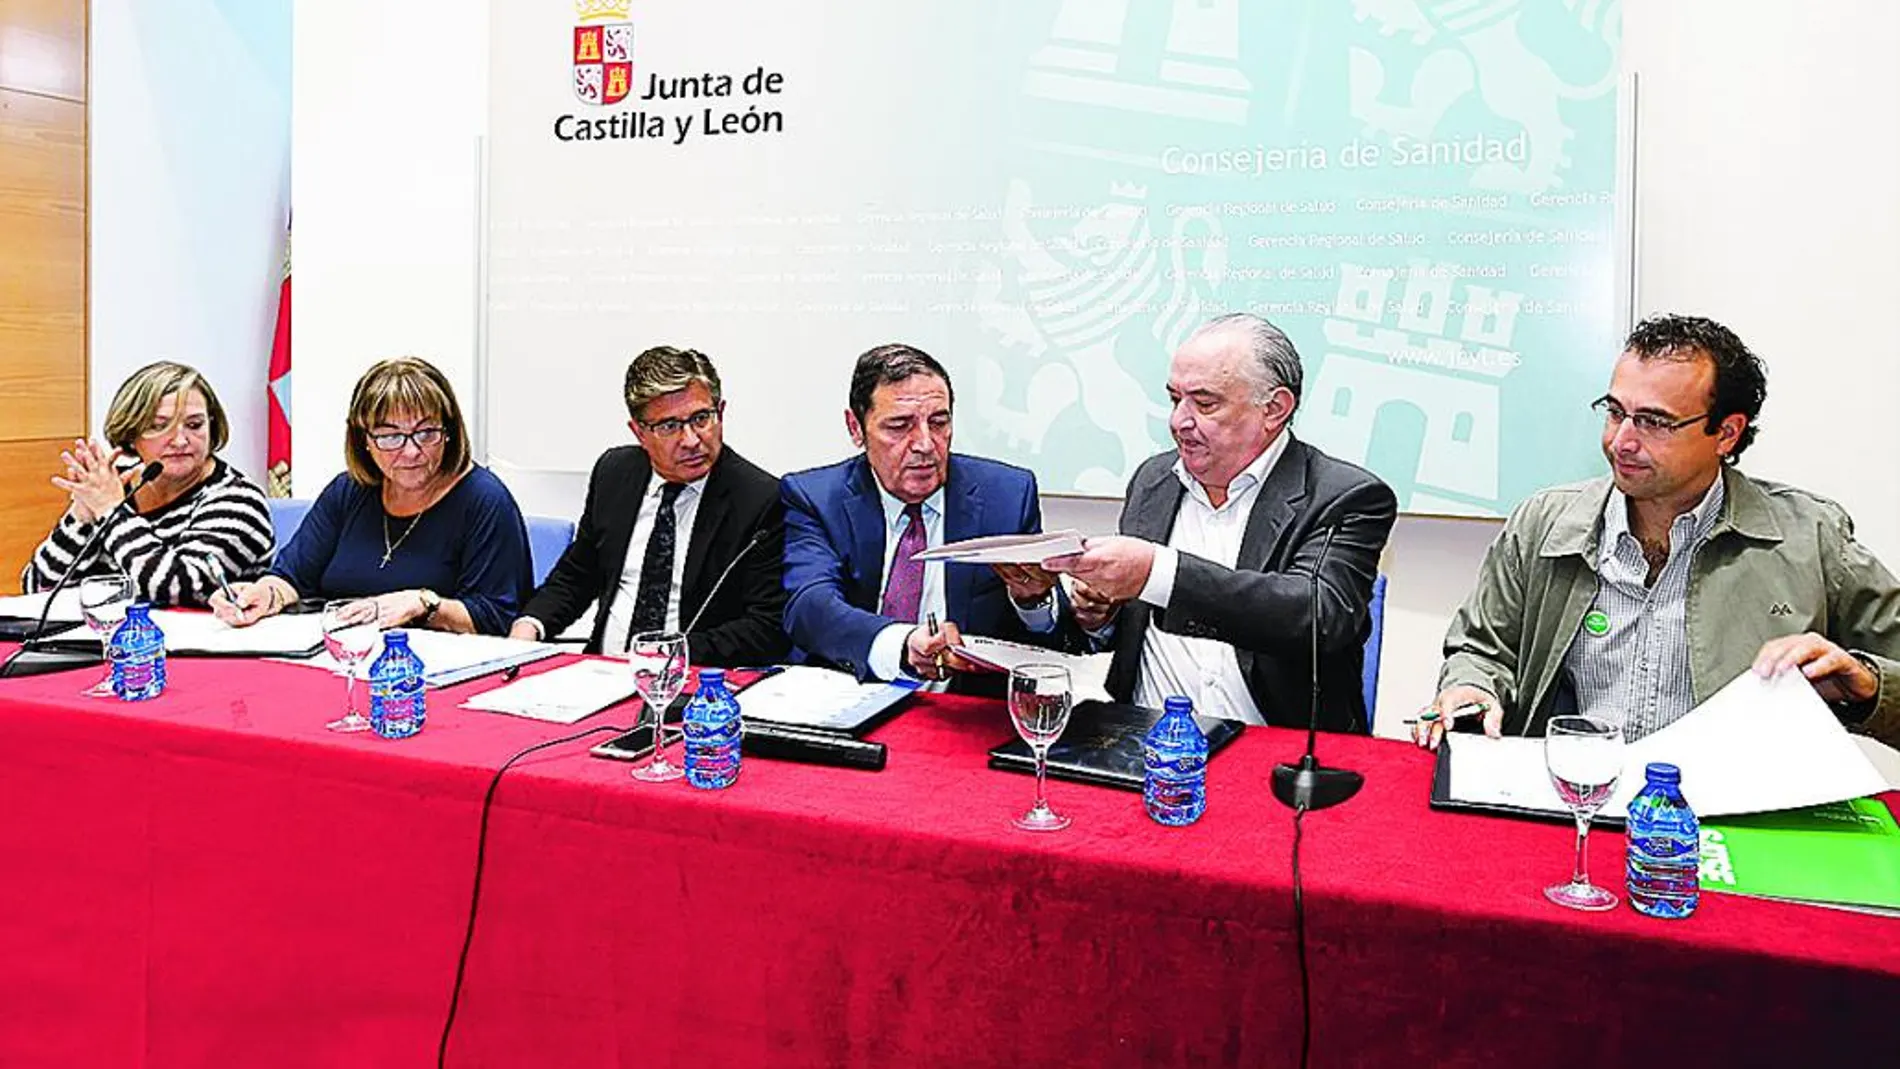 El consejero de Sanidad, Antonio María Sáez Aguado, suscribe el pacto con los representantes sindicales